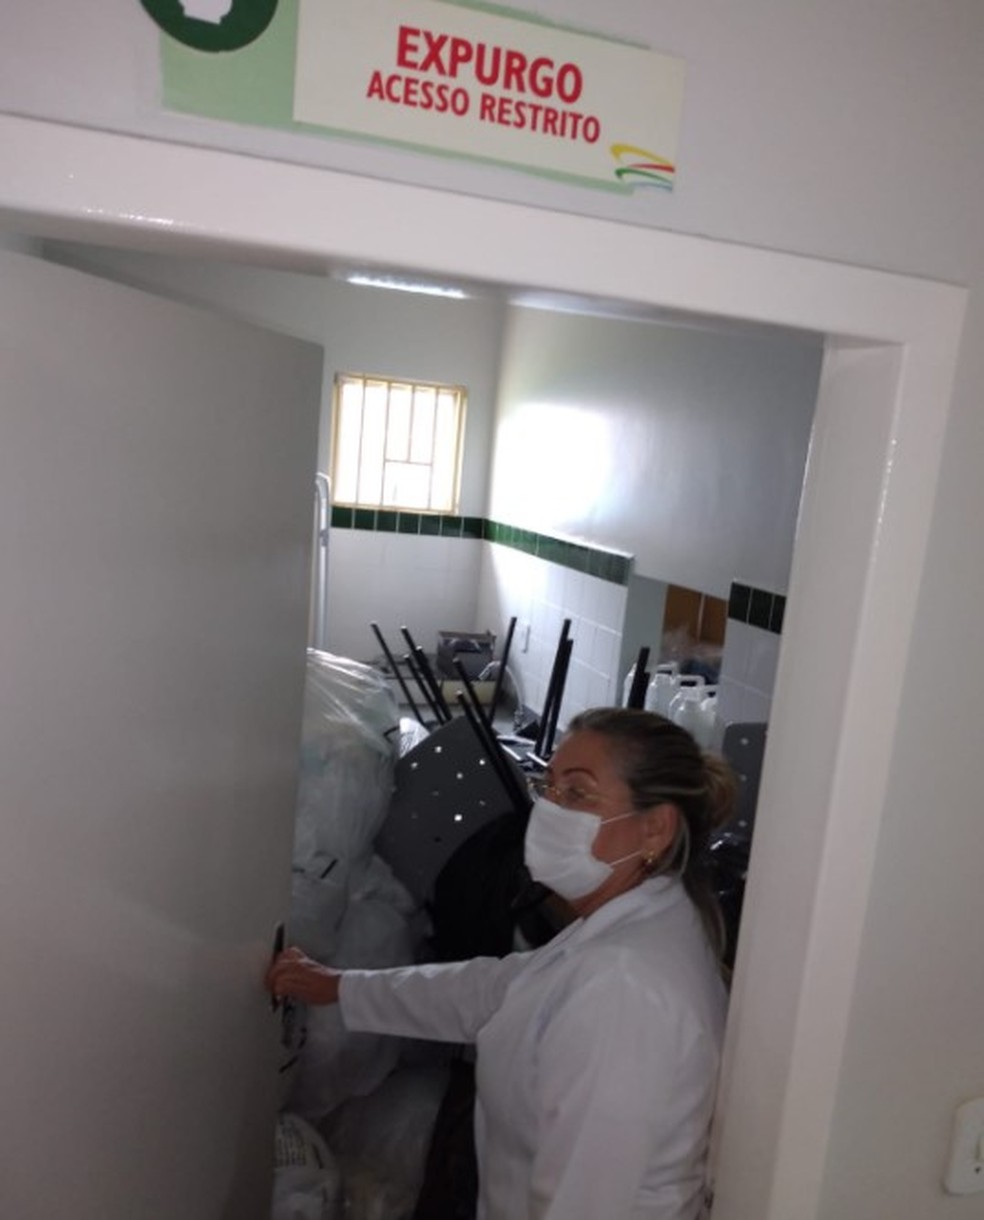 Lixo hospitalar está sendo armazenado dentro do expurgo da USB — Foto: CRM-AC/Divulgação